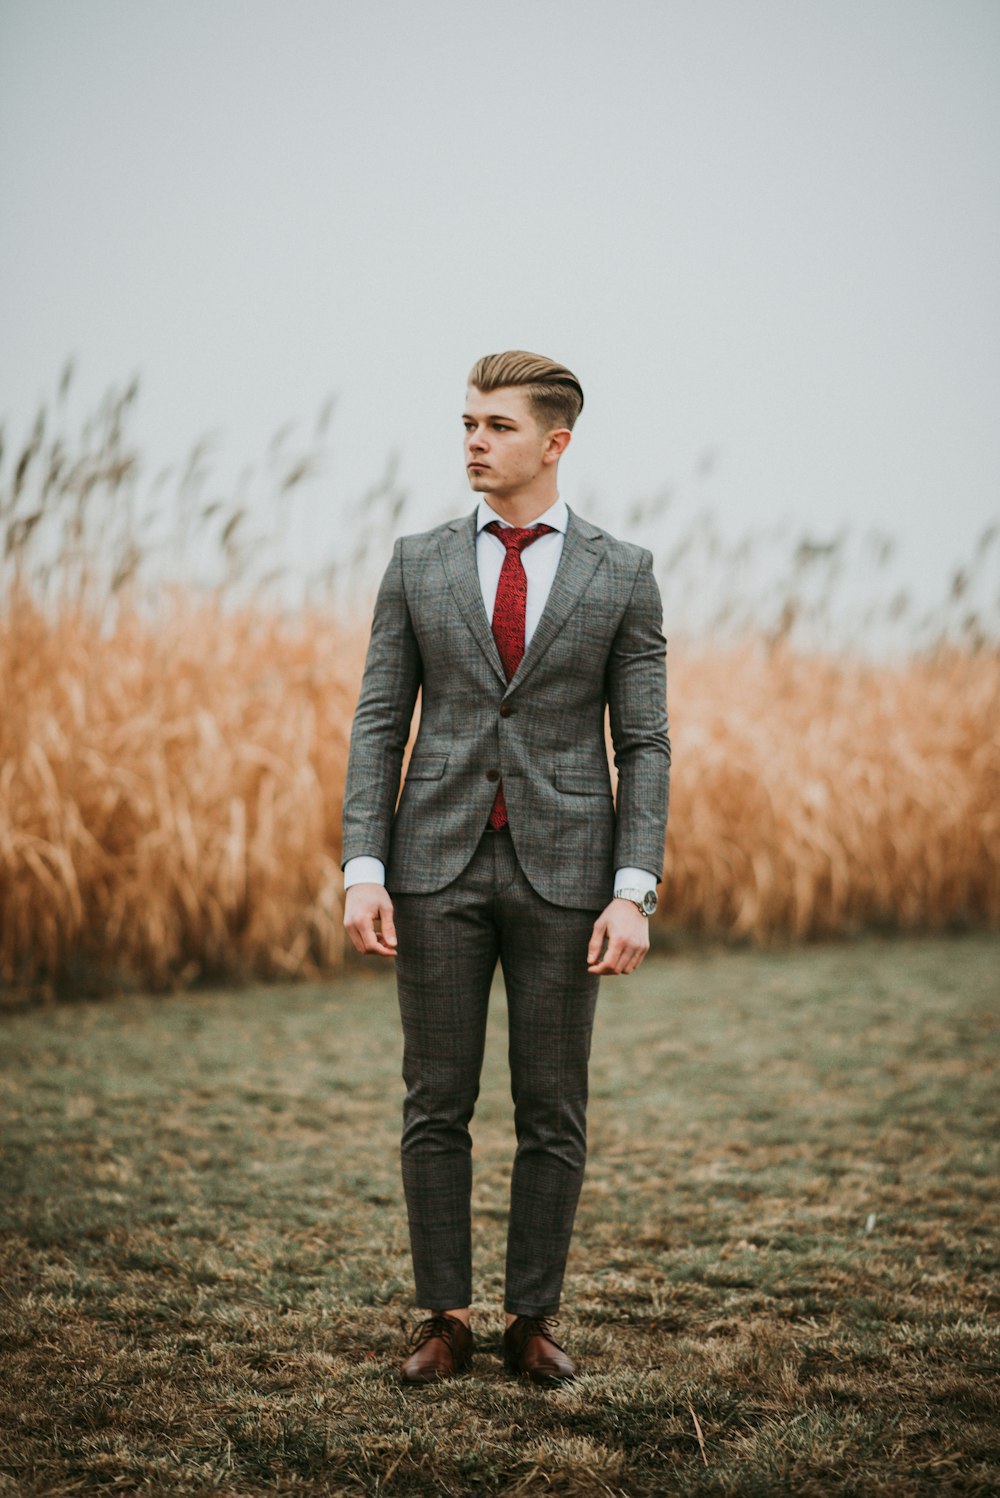 セレクティブ フォーカス写真の茶色の芝生のフィールドの近くに立っている男